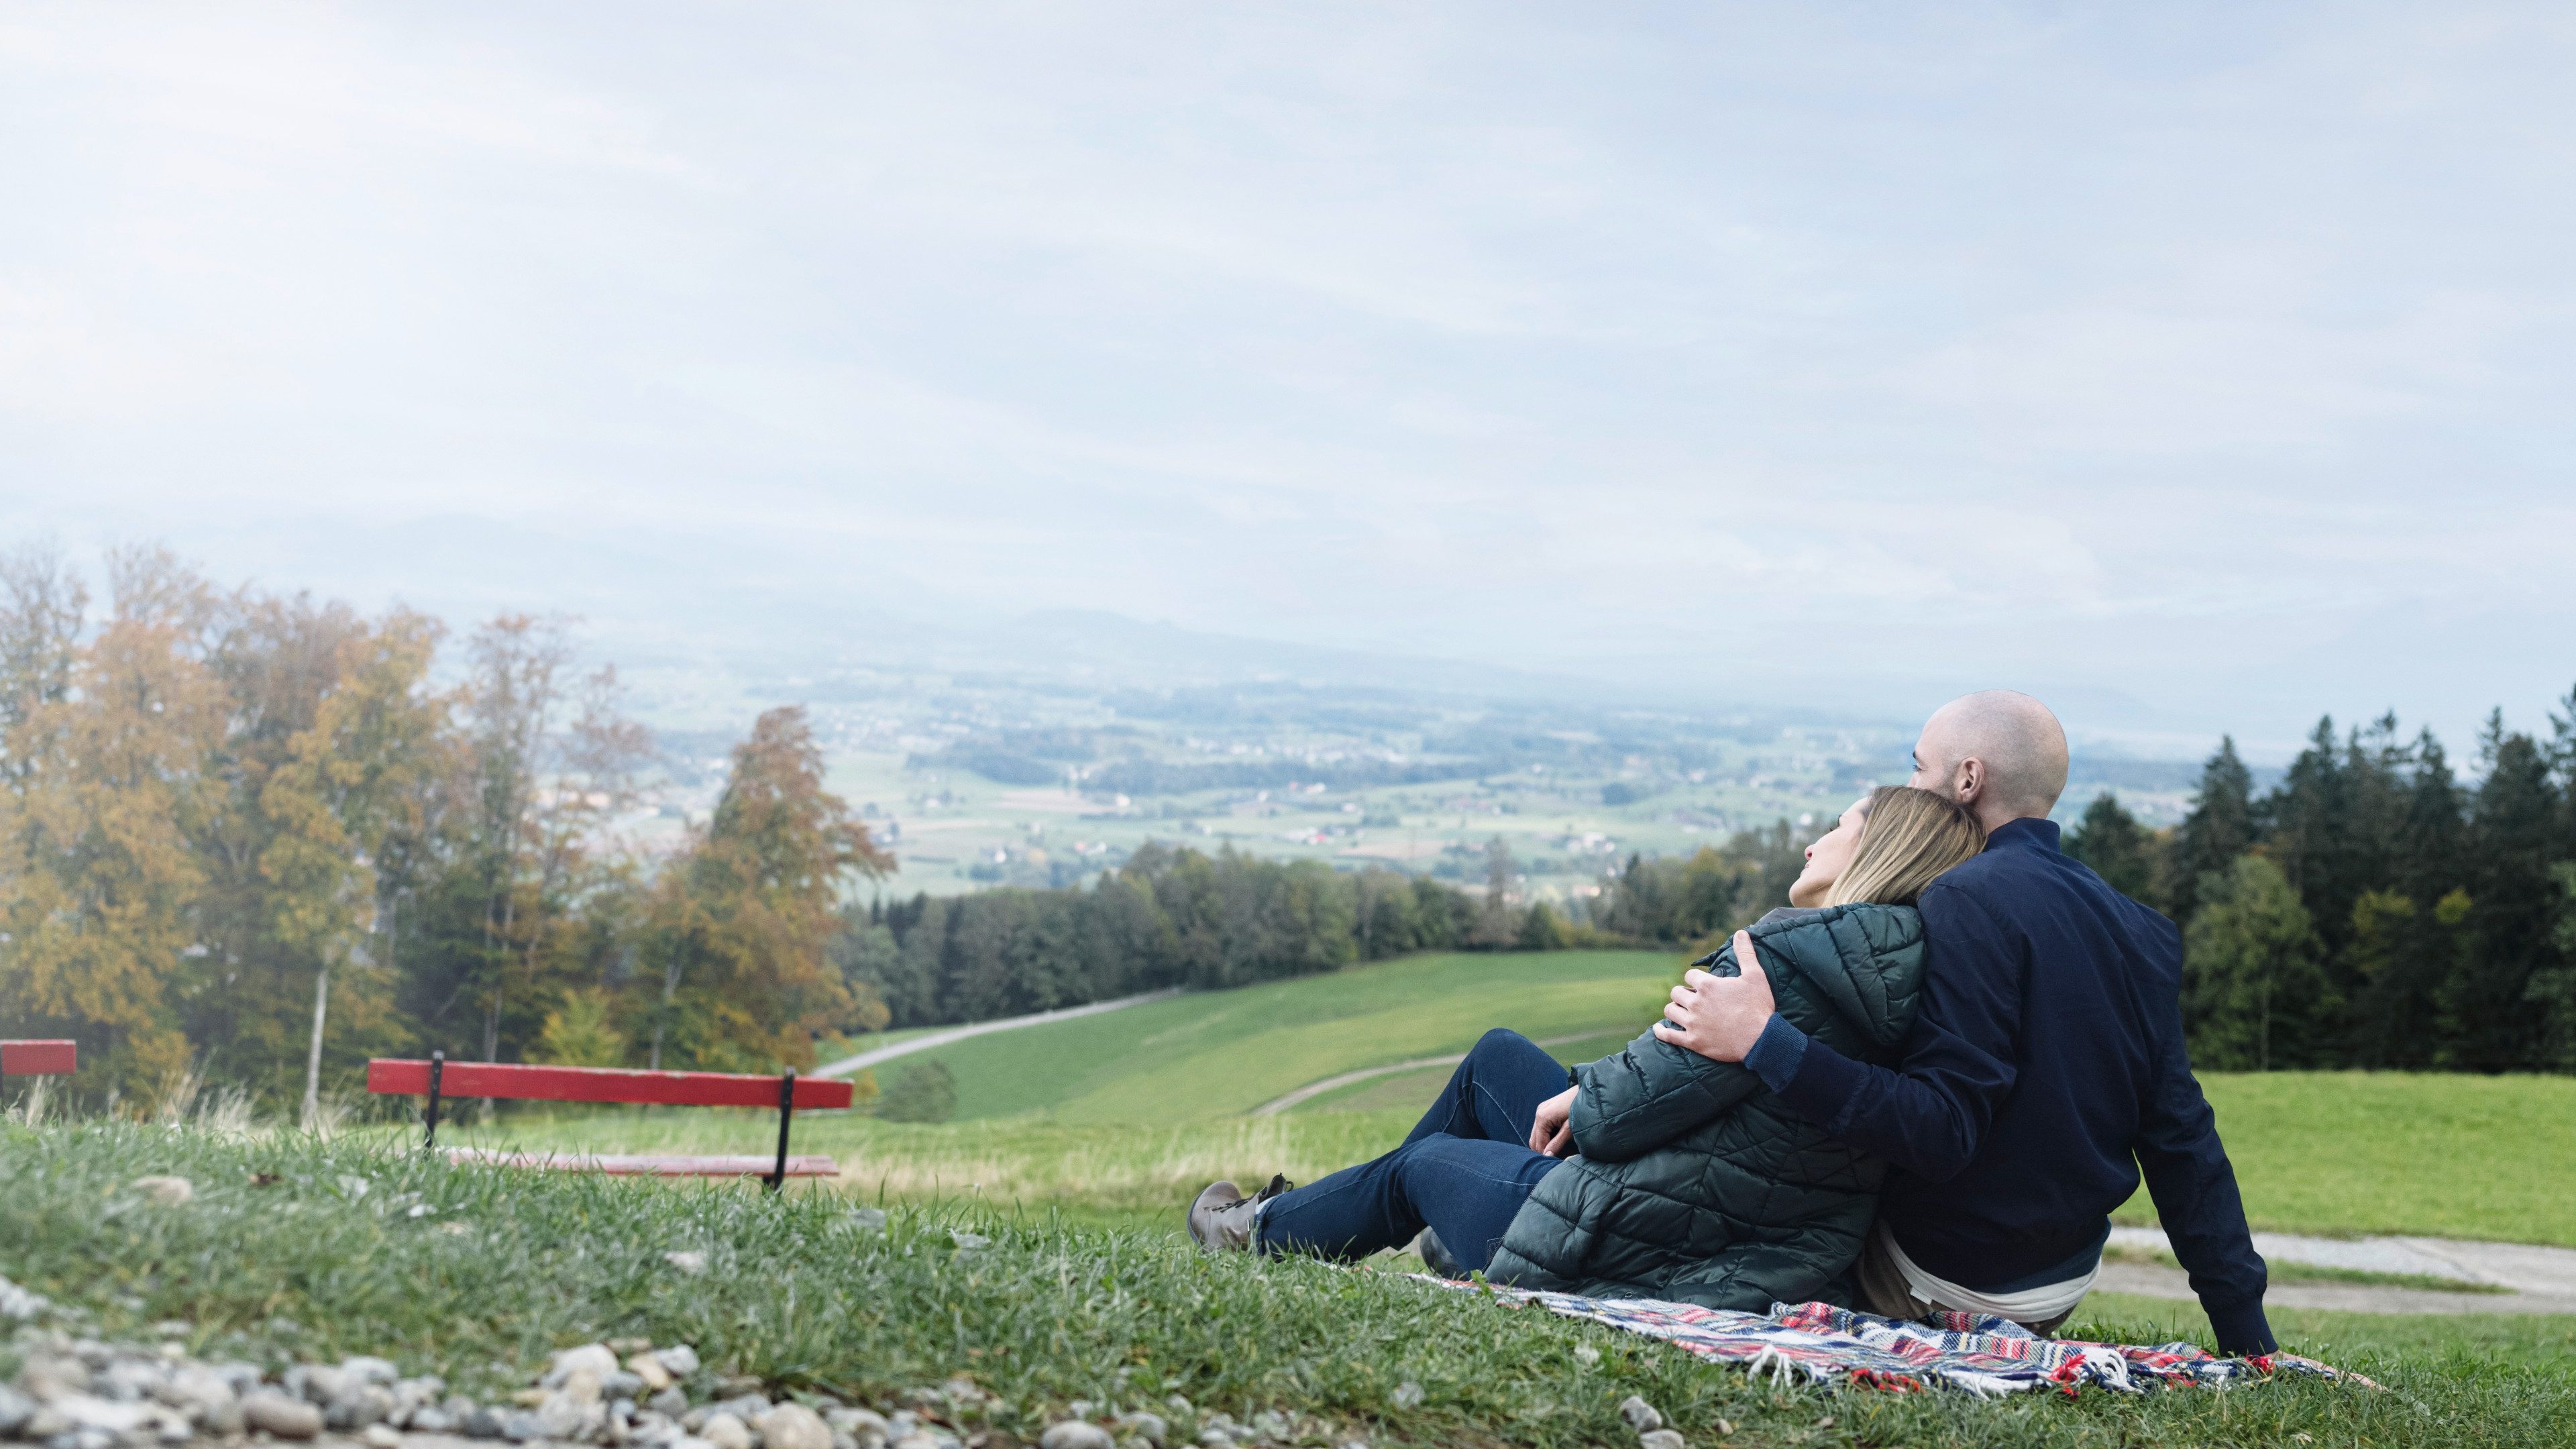 Un homme et une femme sont assis sur une couverture au bord d’un chemin. L’homme a son bras autour de la femme. Tous deux admirent la vue sur une vallée boisée.